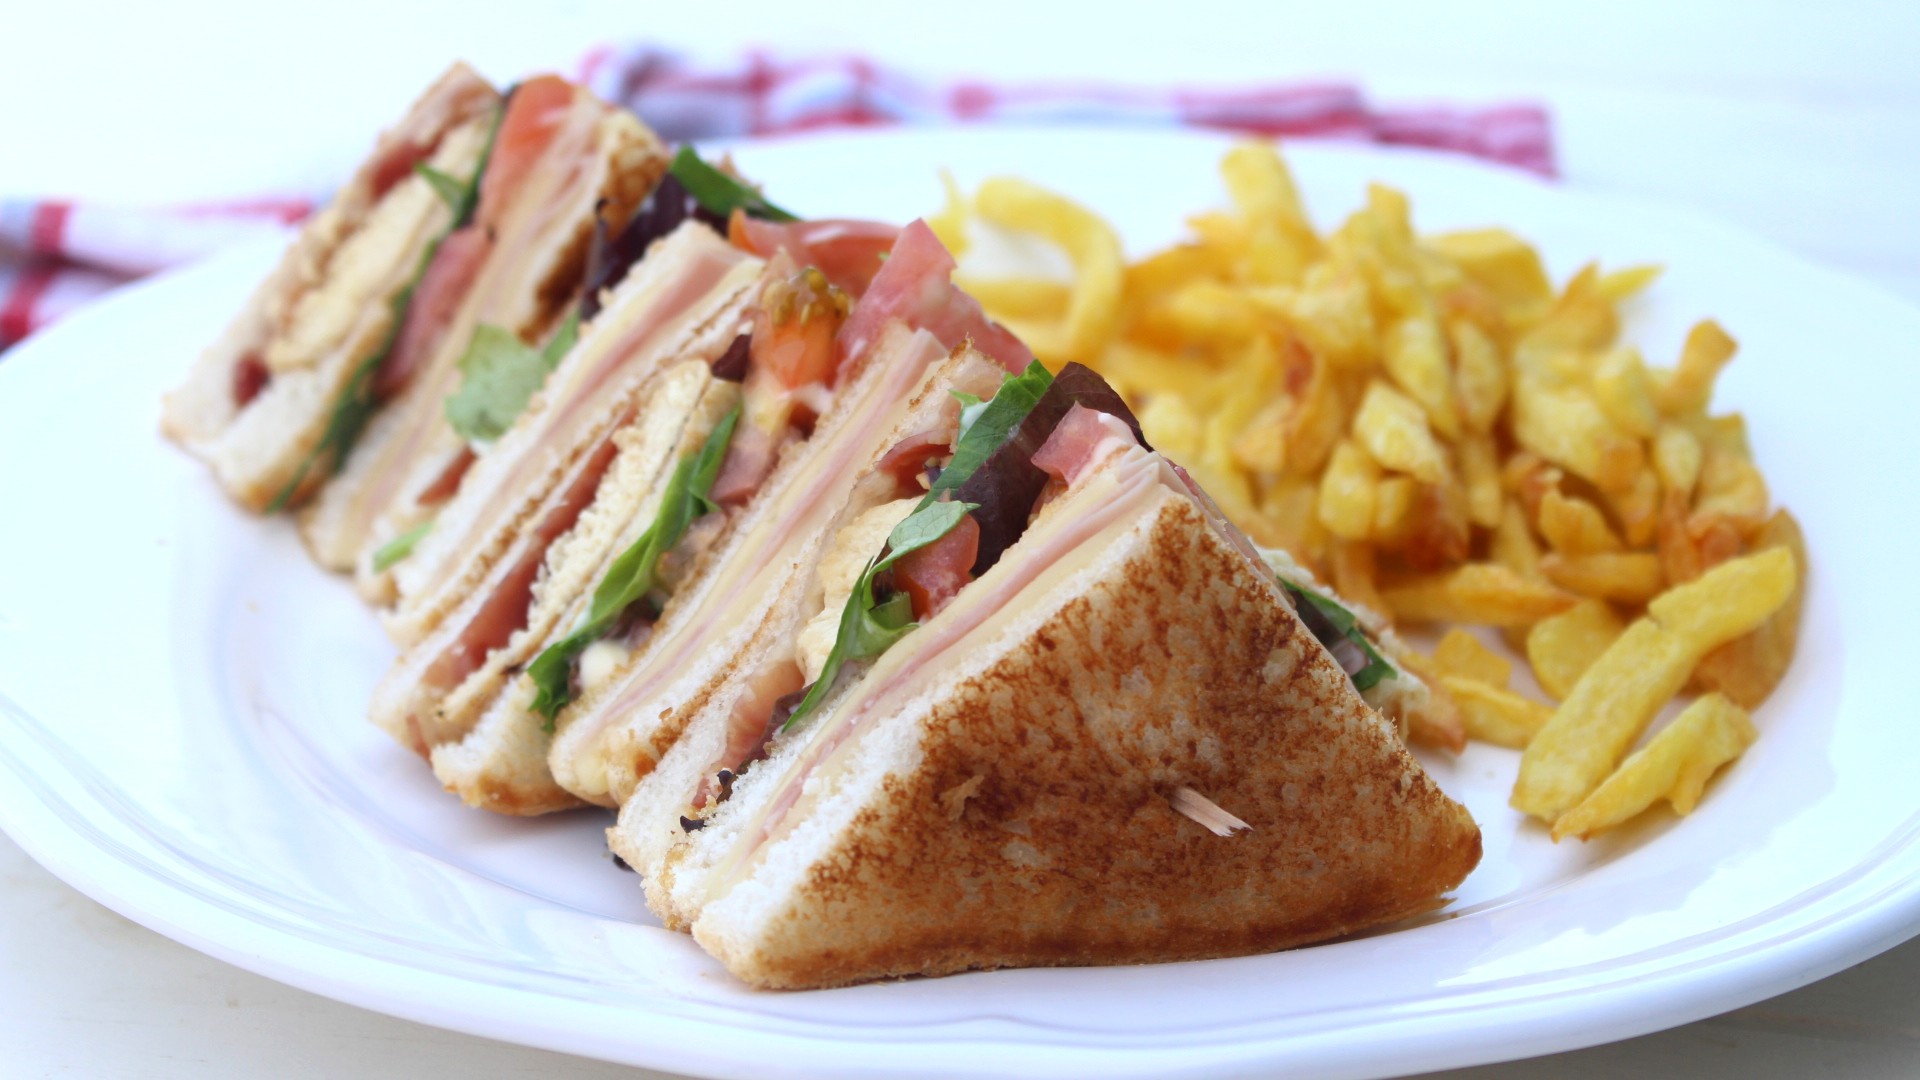 Sandwich club casero - El más famoso del VIPS - Saltando la dieta